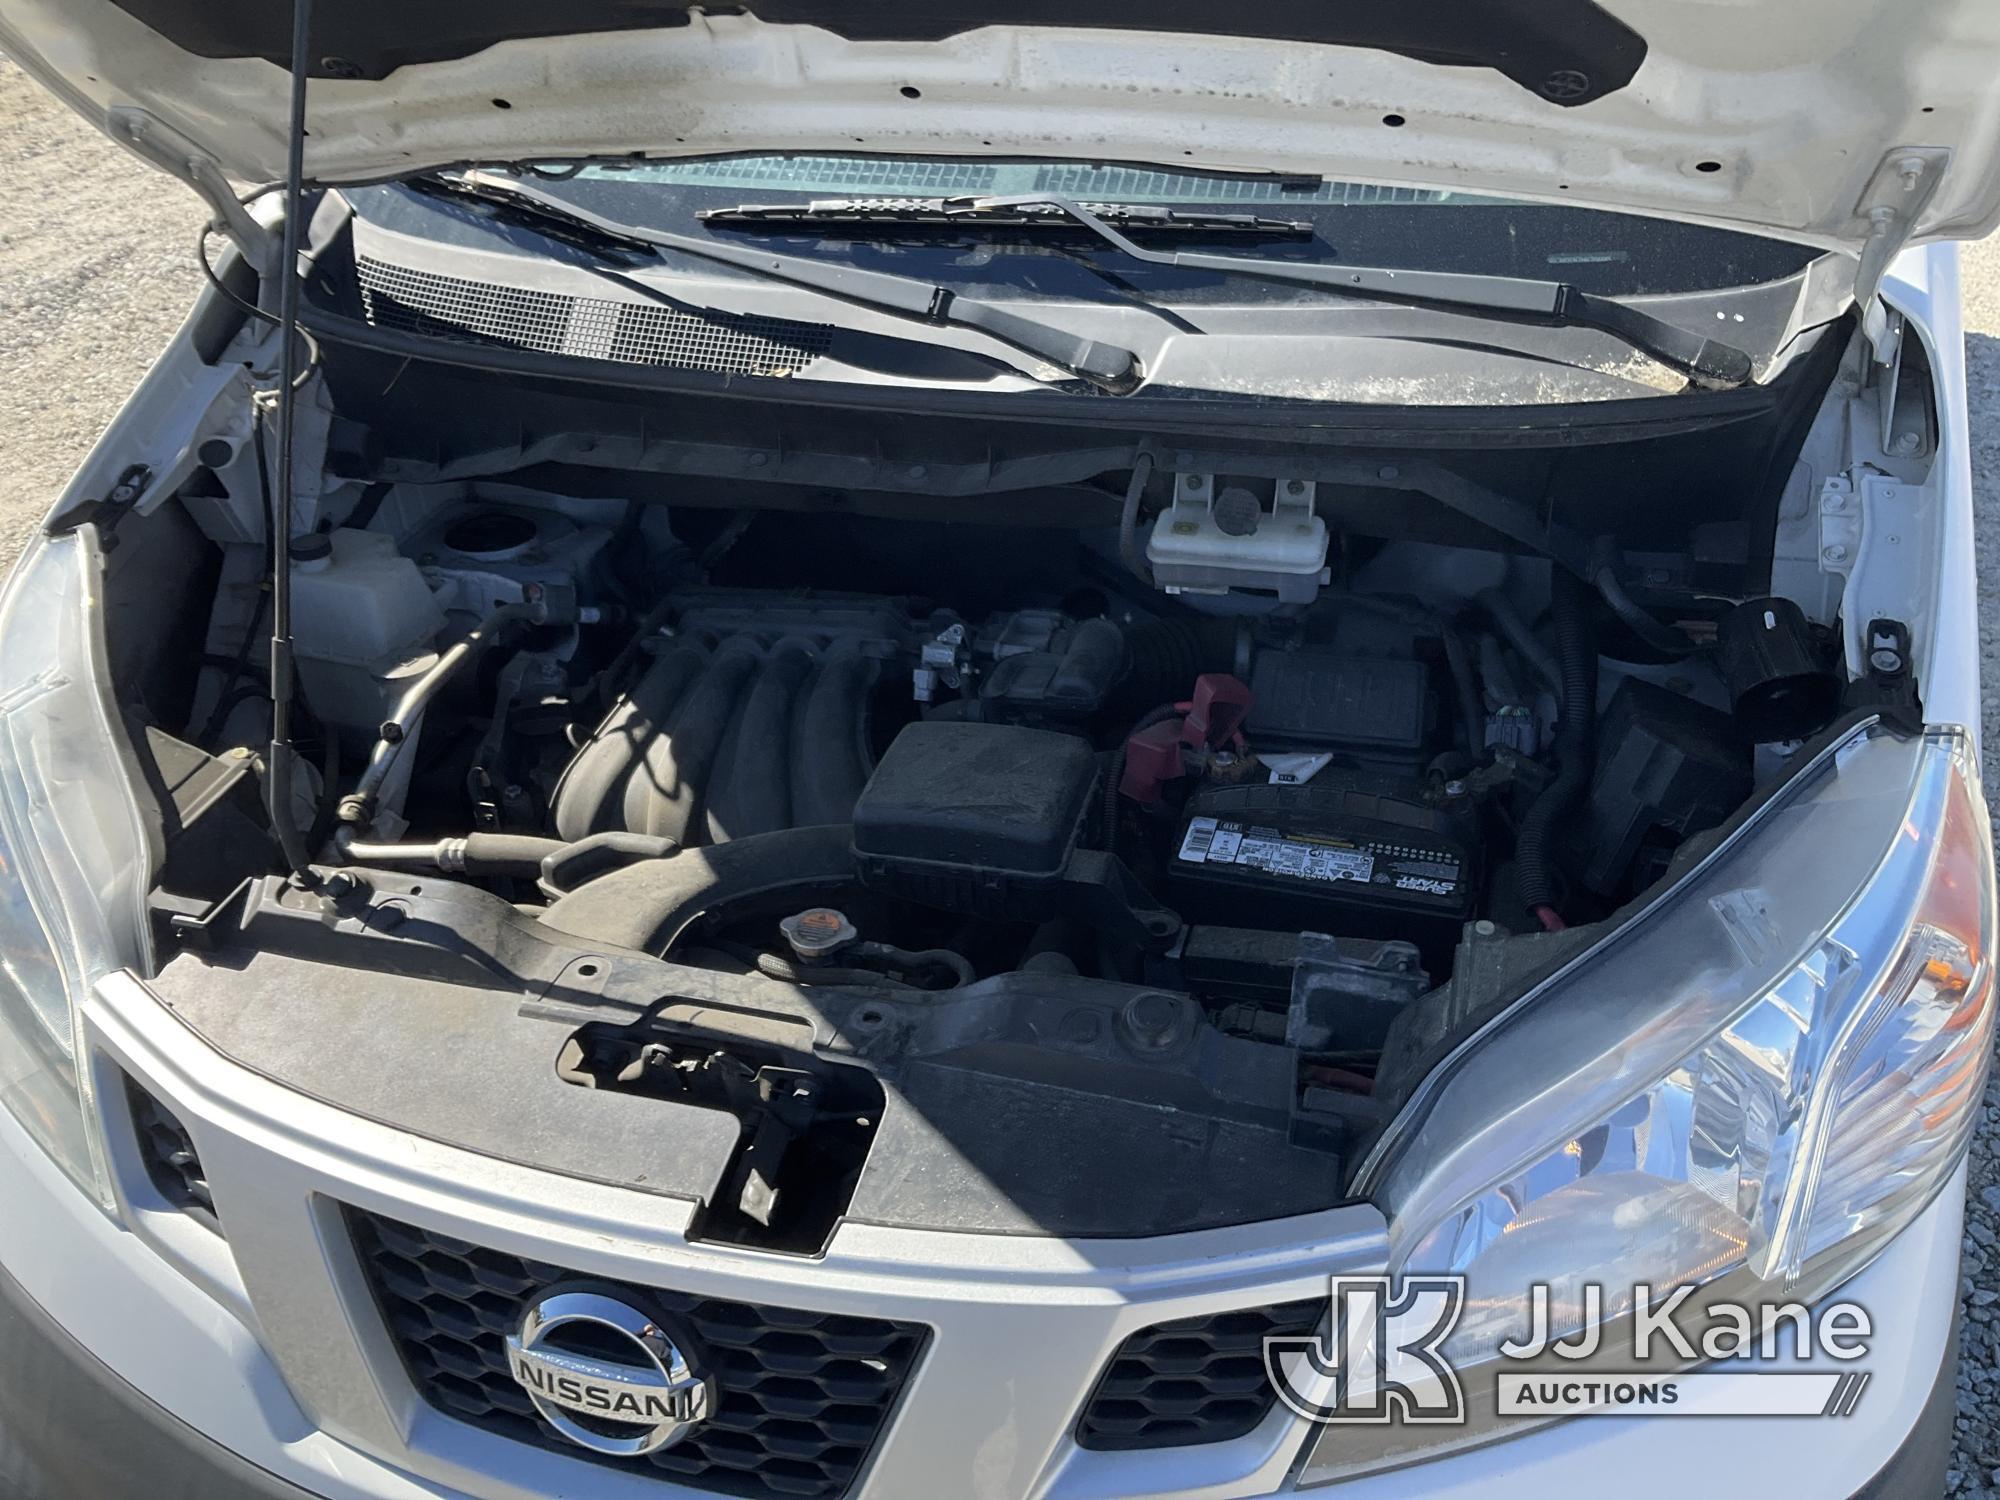 (Villa Rica, GA) 2017 Nissan NV200 Cargo Van Runs & Moves) (Airbag Light On, Body Damage, Passenger